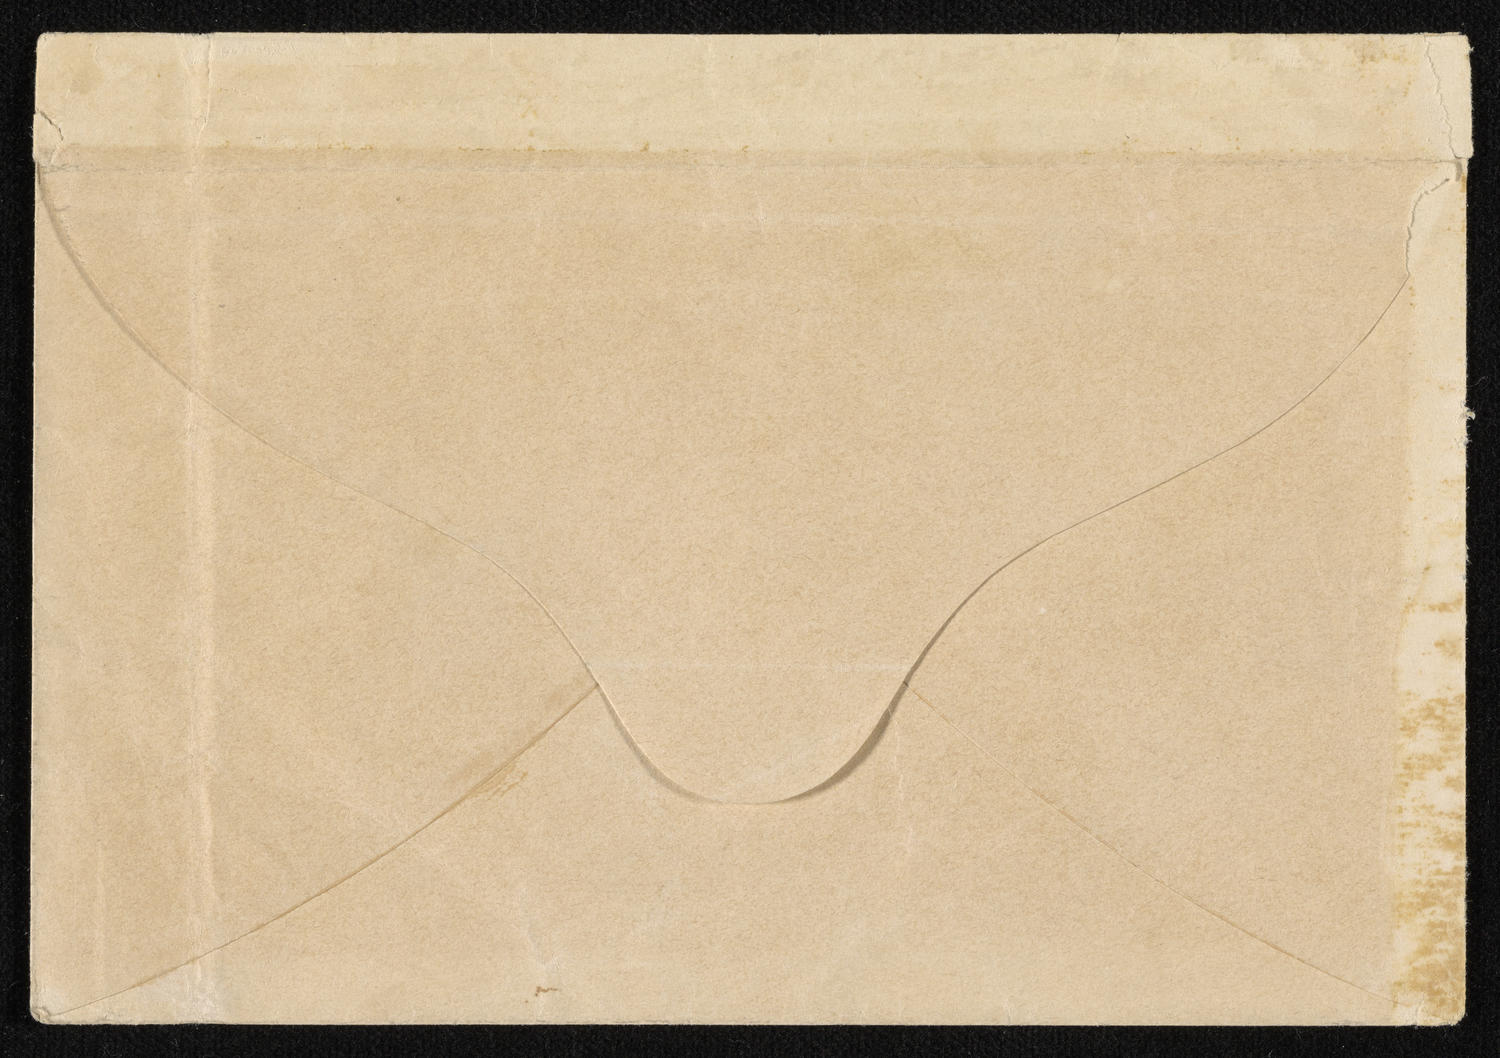 Envelope for Franz Liszt calling card, October 4, 1860 (back)